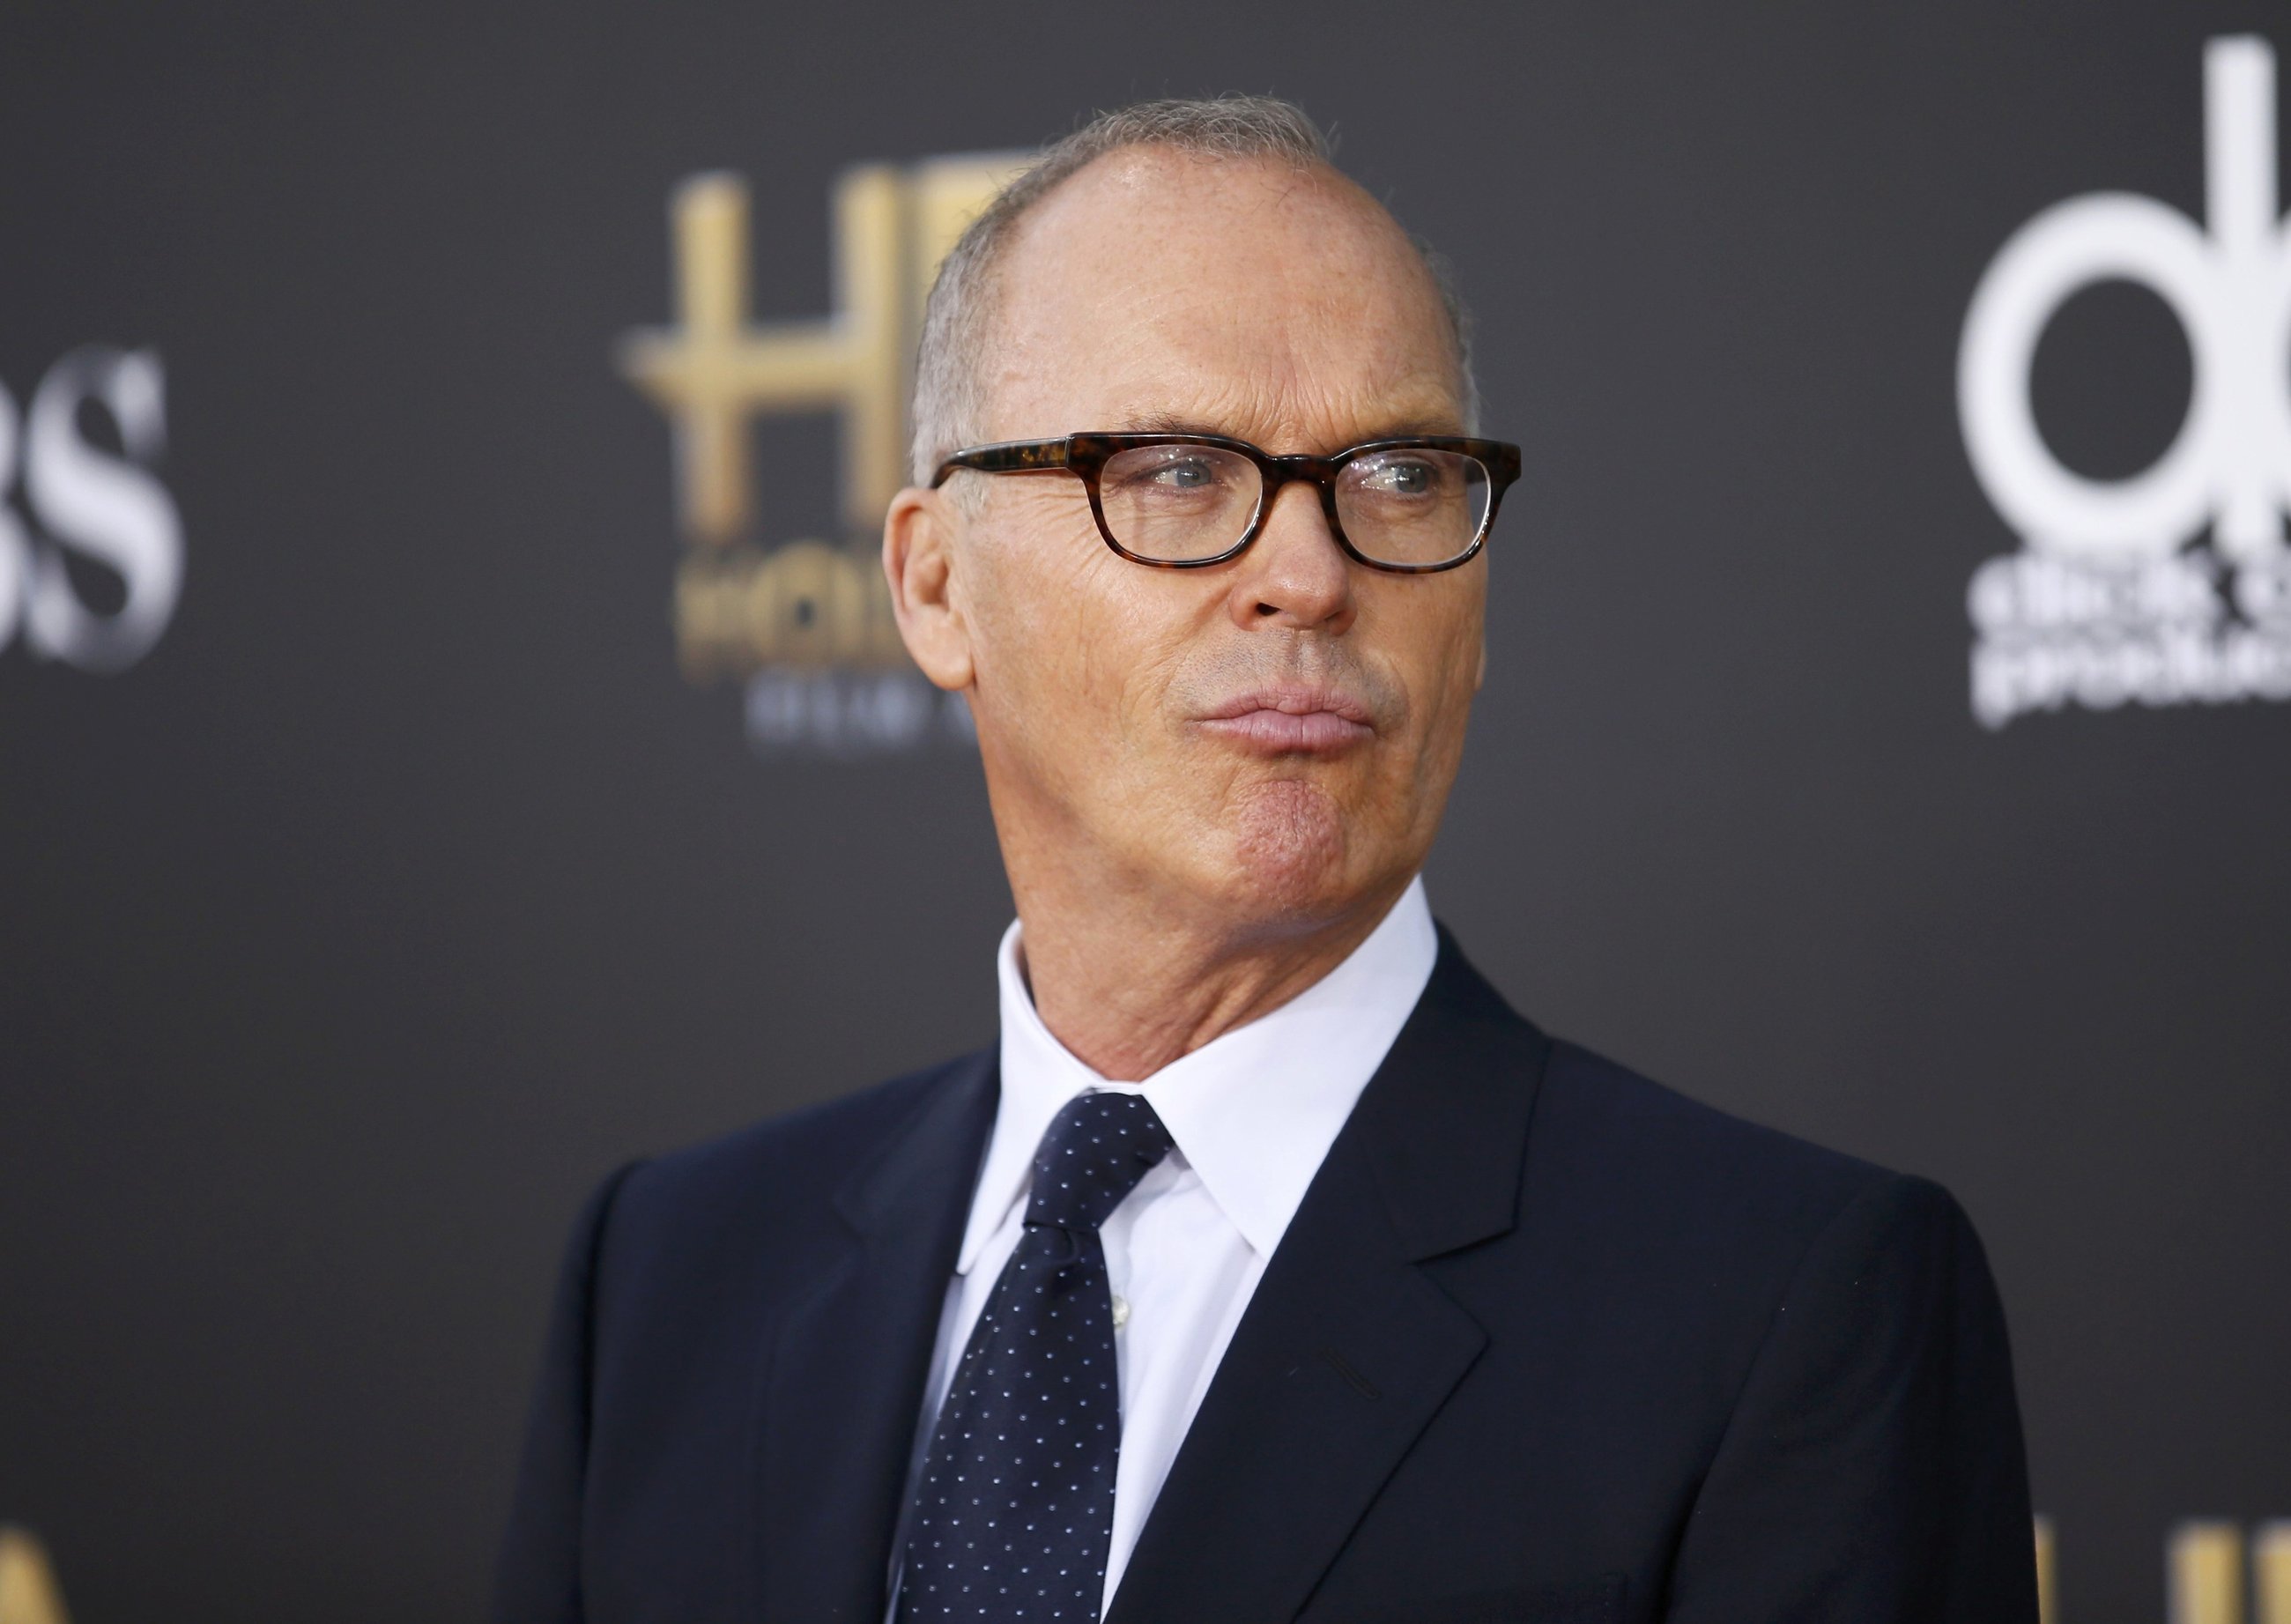 Actor Michael Keaton Actor Michael Keaton arrives at the Hollywood 